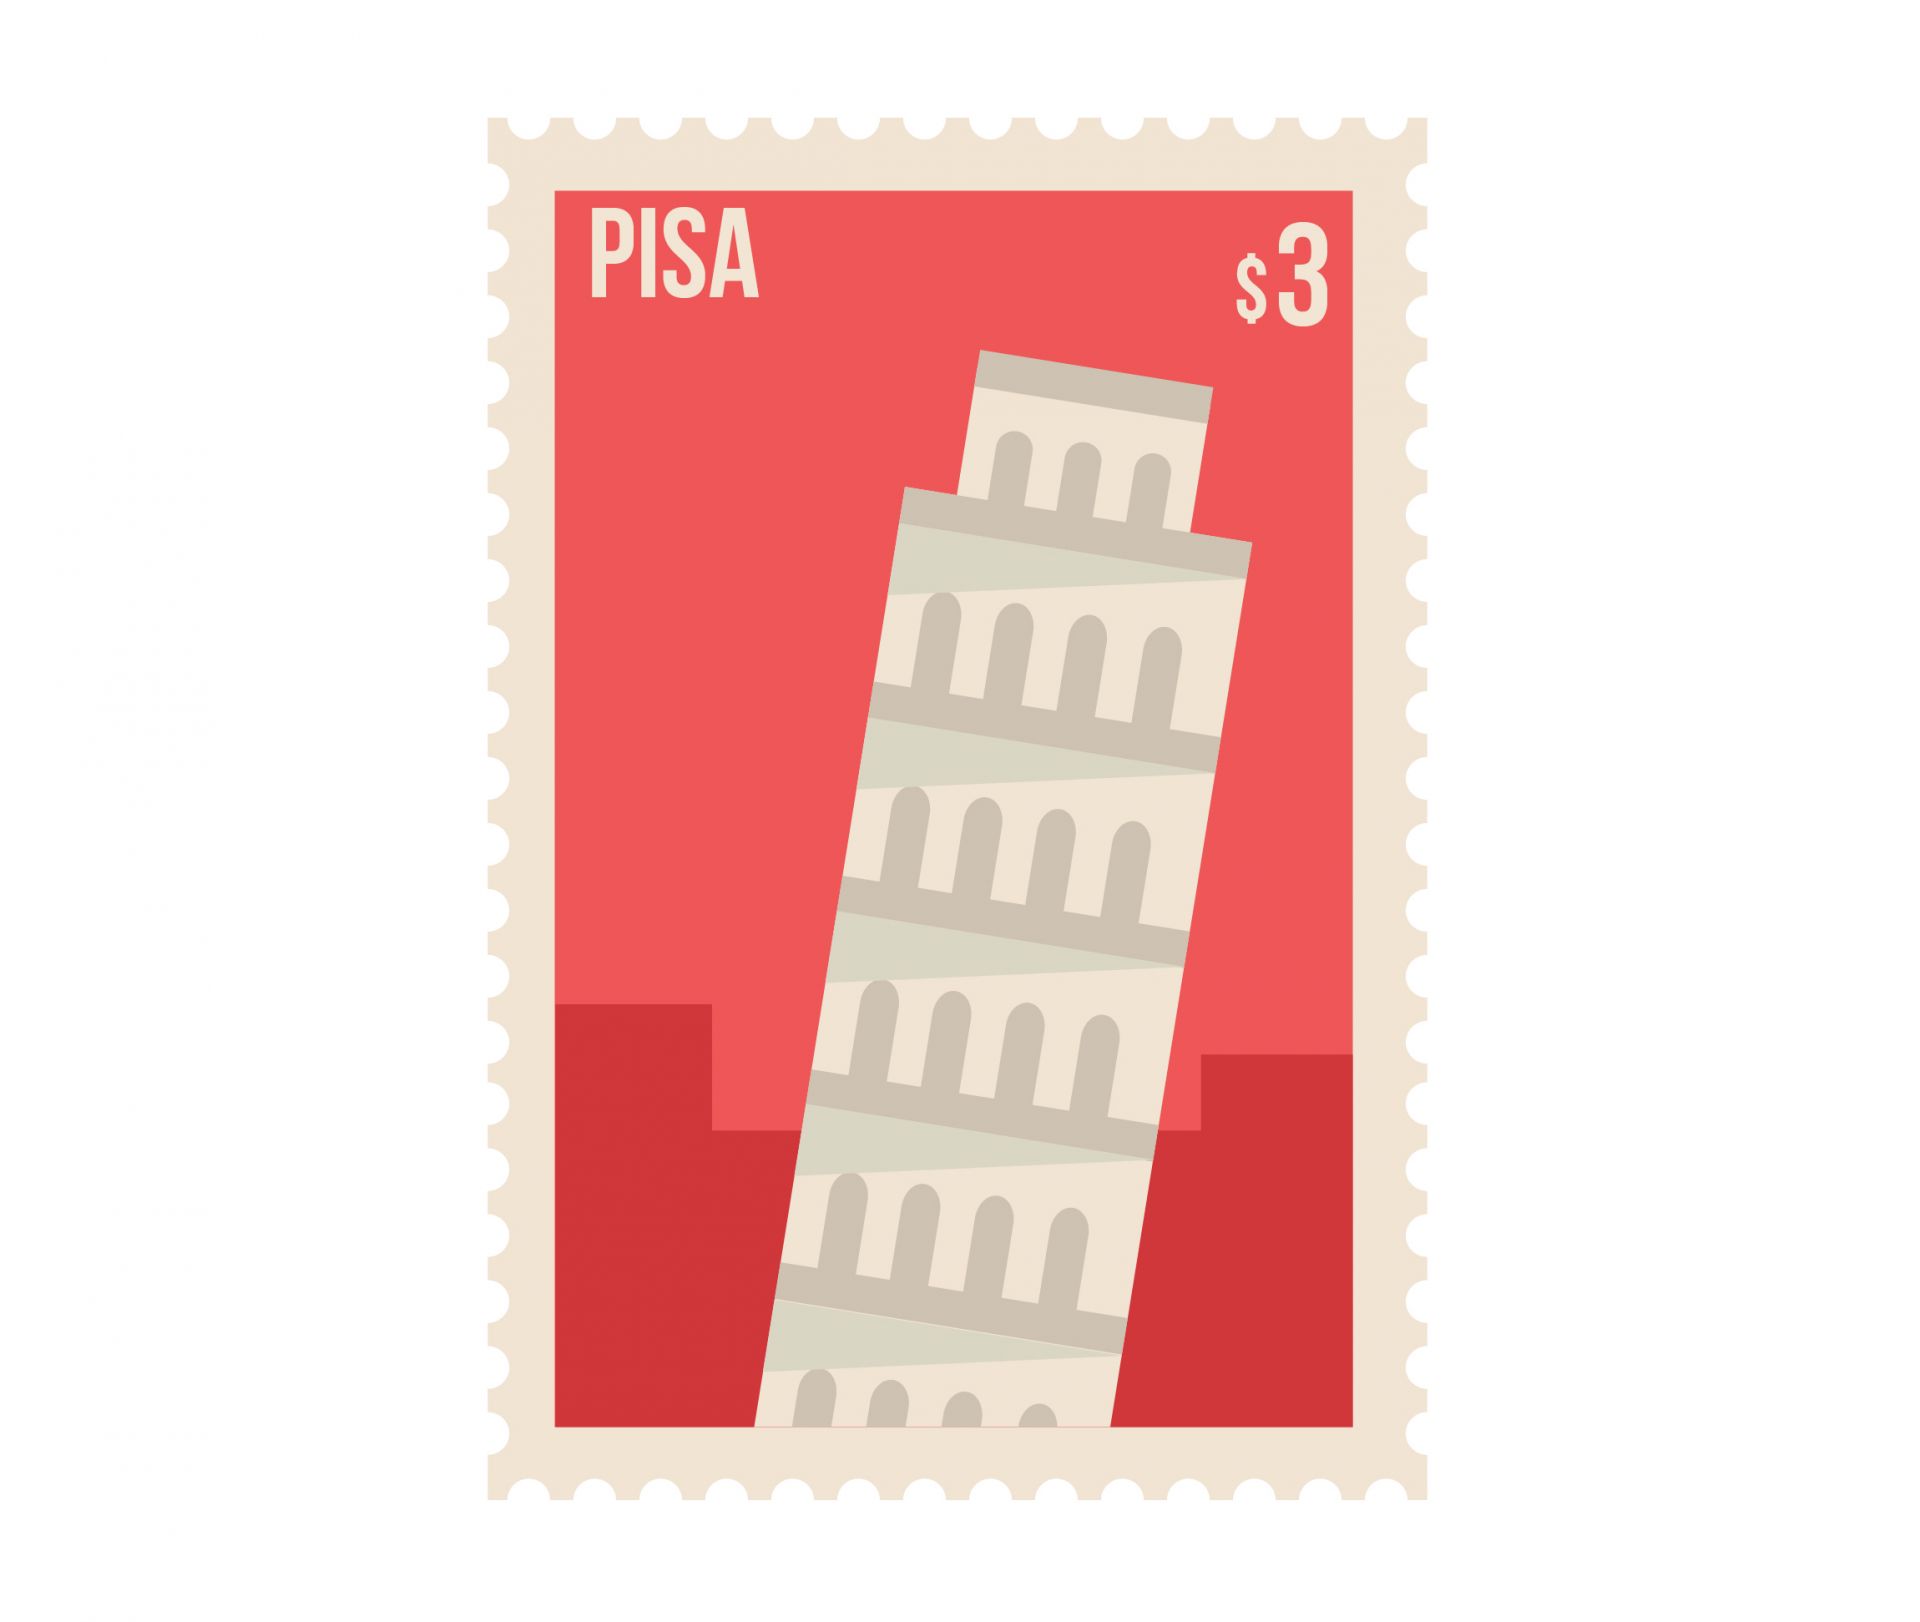 Để tháp nghiêng đứng vững được như ngày hôm nay, nó
phải trải qua nhiều thăng trầm lịch sử. Bắt đầu xây dựng
vào 9/8/1173, 5 năm sau, khi xây dựng đến tầng thứ 3 thì
nó bắt đầu có dấu hiệu bị nghiêng. Nguyên nhân chủ yếu là
do xây trên địa hình đất lún, thêm vào đó, giai đoạn này
thành phố Pisa mâu thuẫn với anh bạn láng giềng Florence
nên việc xây dựng cũng kéo dài.

Nhiều biện pháp được đưa ra để giữ cho công trình khổng
lồ đứng vững trên nền đất không ổn định như: sử dụng đá
hình thang, tạo độ cong cho tháp, xây một bên cao hơn bên
kia... trong suốt thời gian đó, tháp gặp không ít những lời
đồn như nó sẽ gây nguy hiểm, cái tháp nghiêng thật vô
dụng... Vượt lên tất cả, Pisa vẫn đứng đó 7-8 thế kỷ qua.